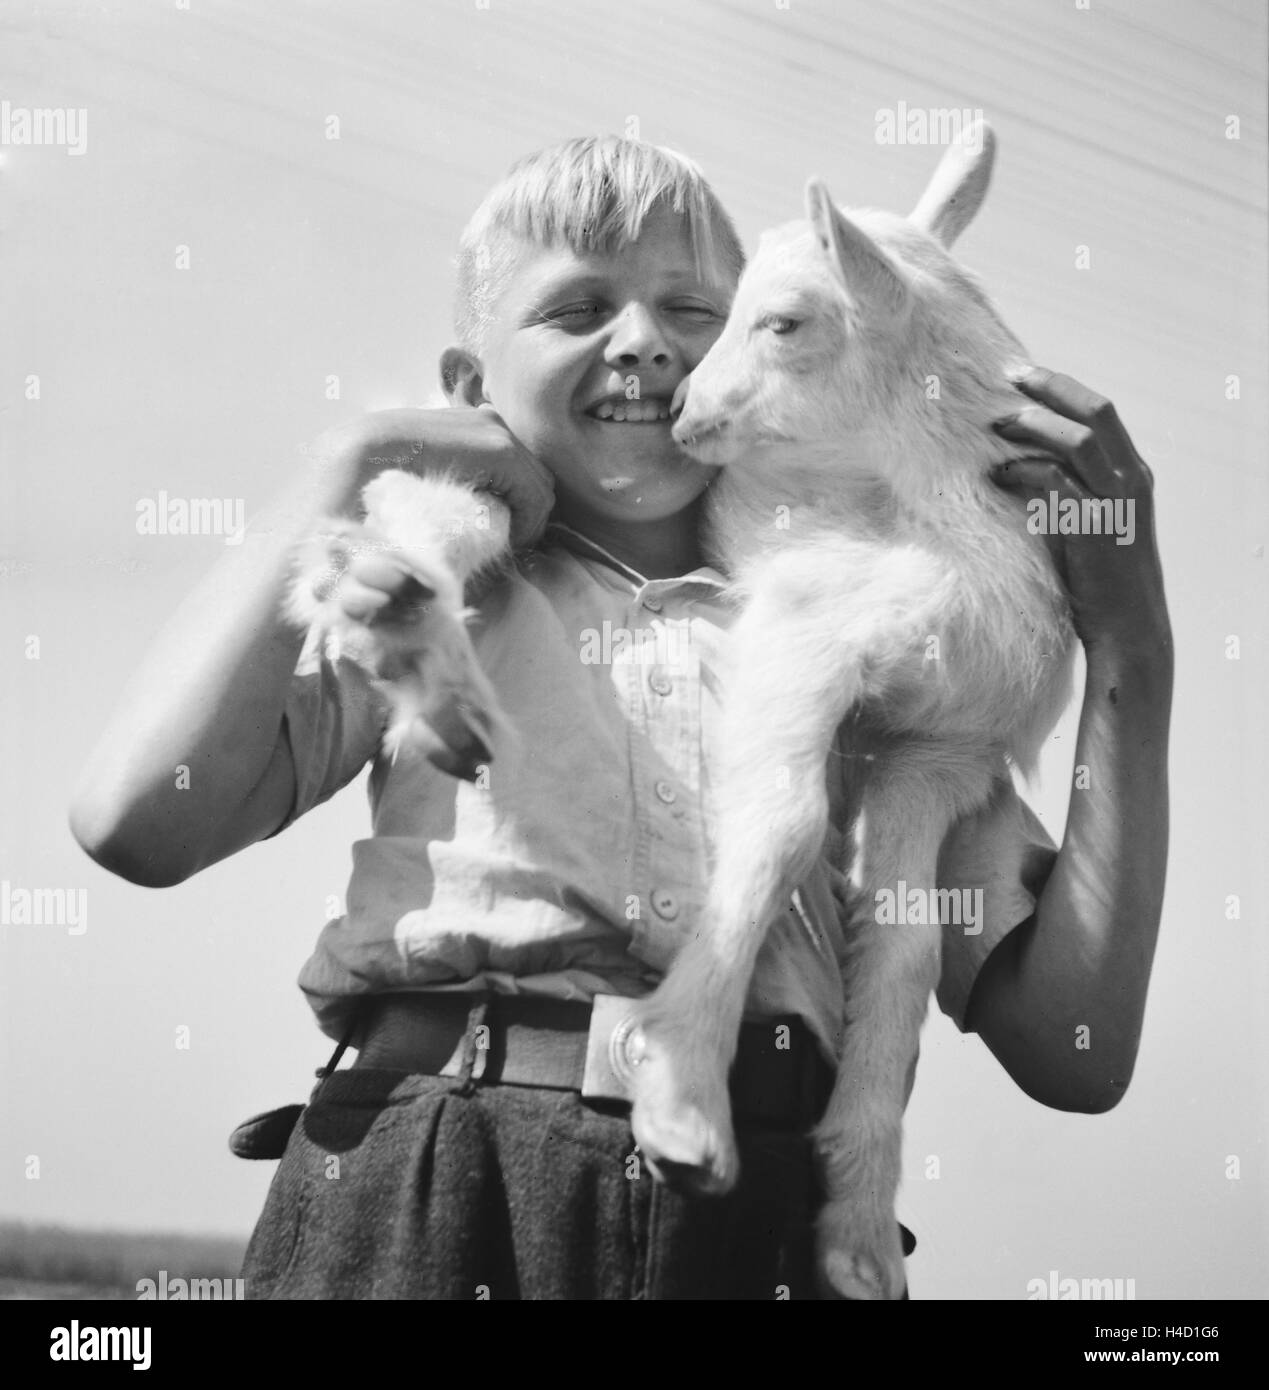 Kinder spielen Mit einem Lamm, Deutschland 1930er Jahre. Bambini che giocano con un po' di agnello, Germania 1930s. Foto Stock